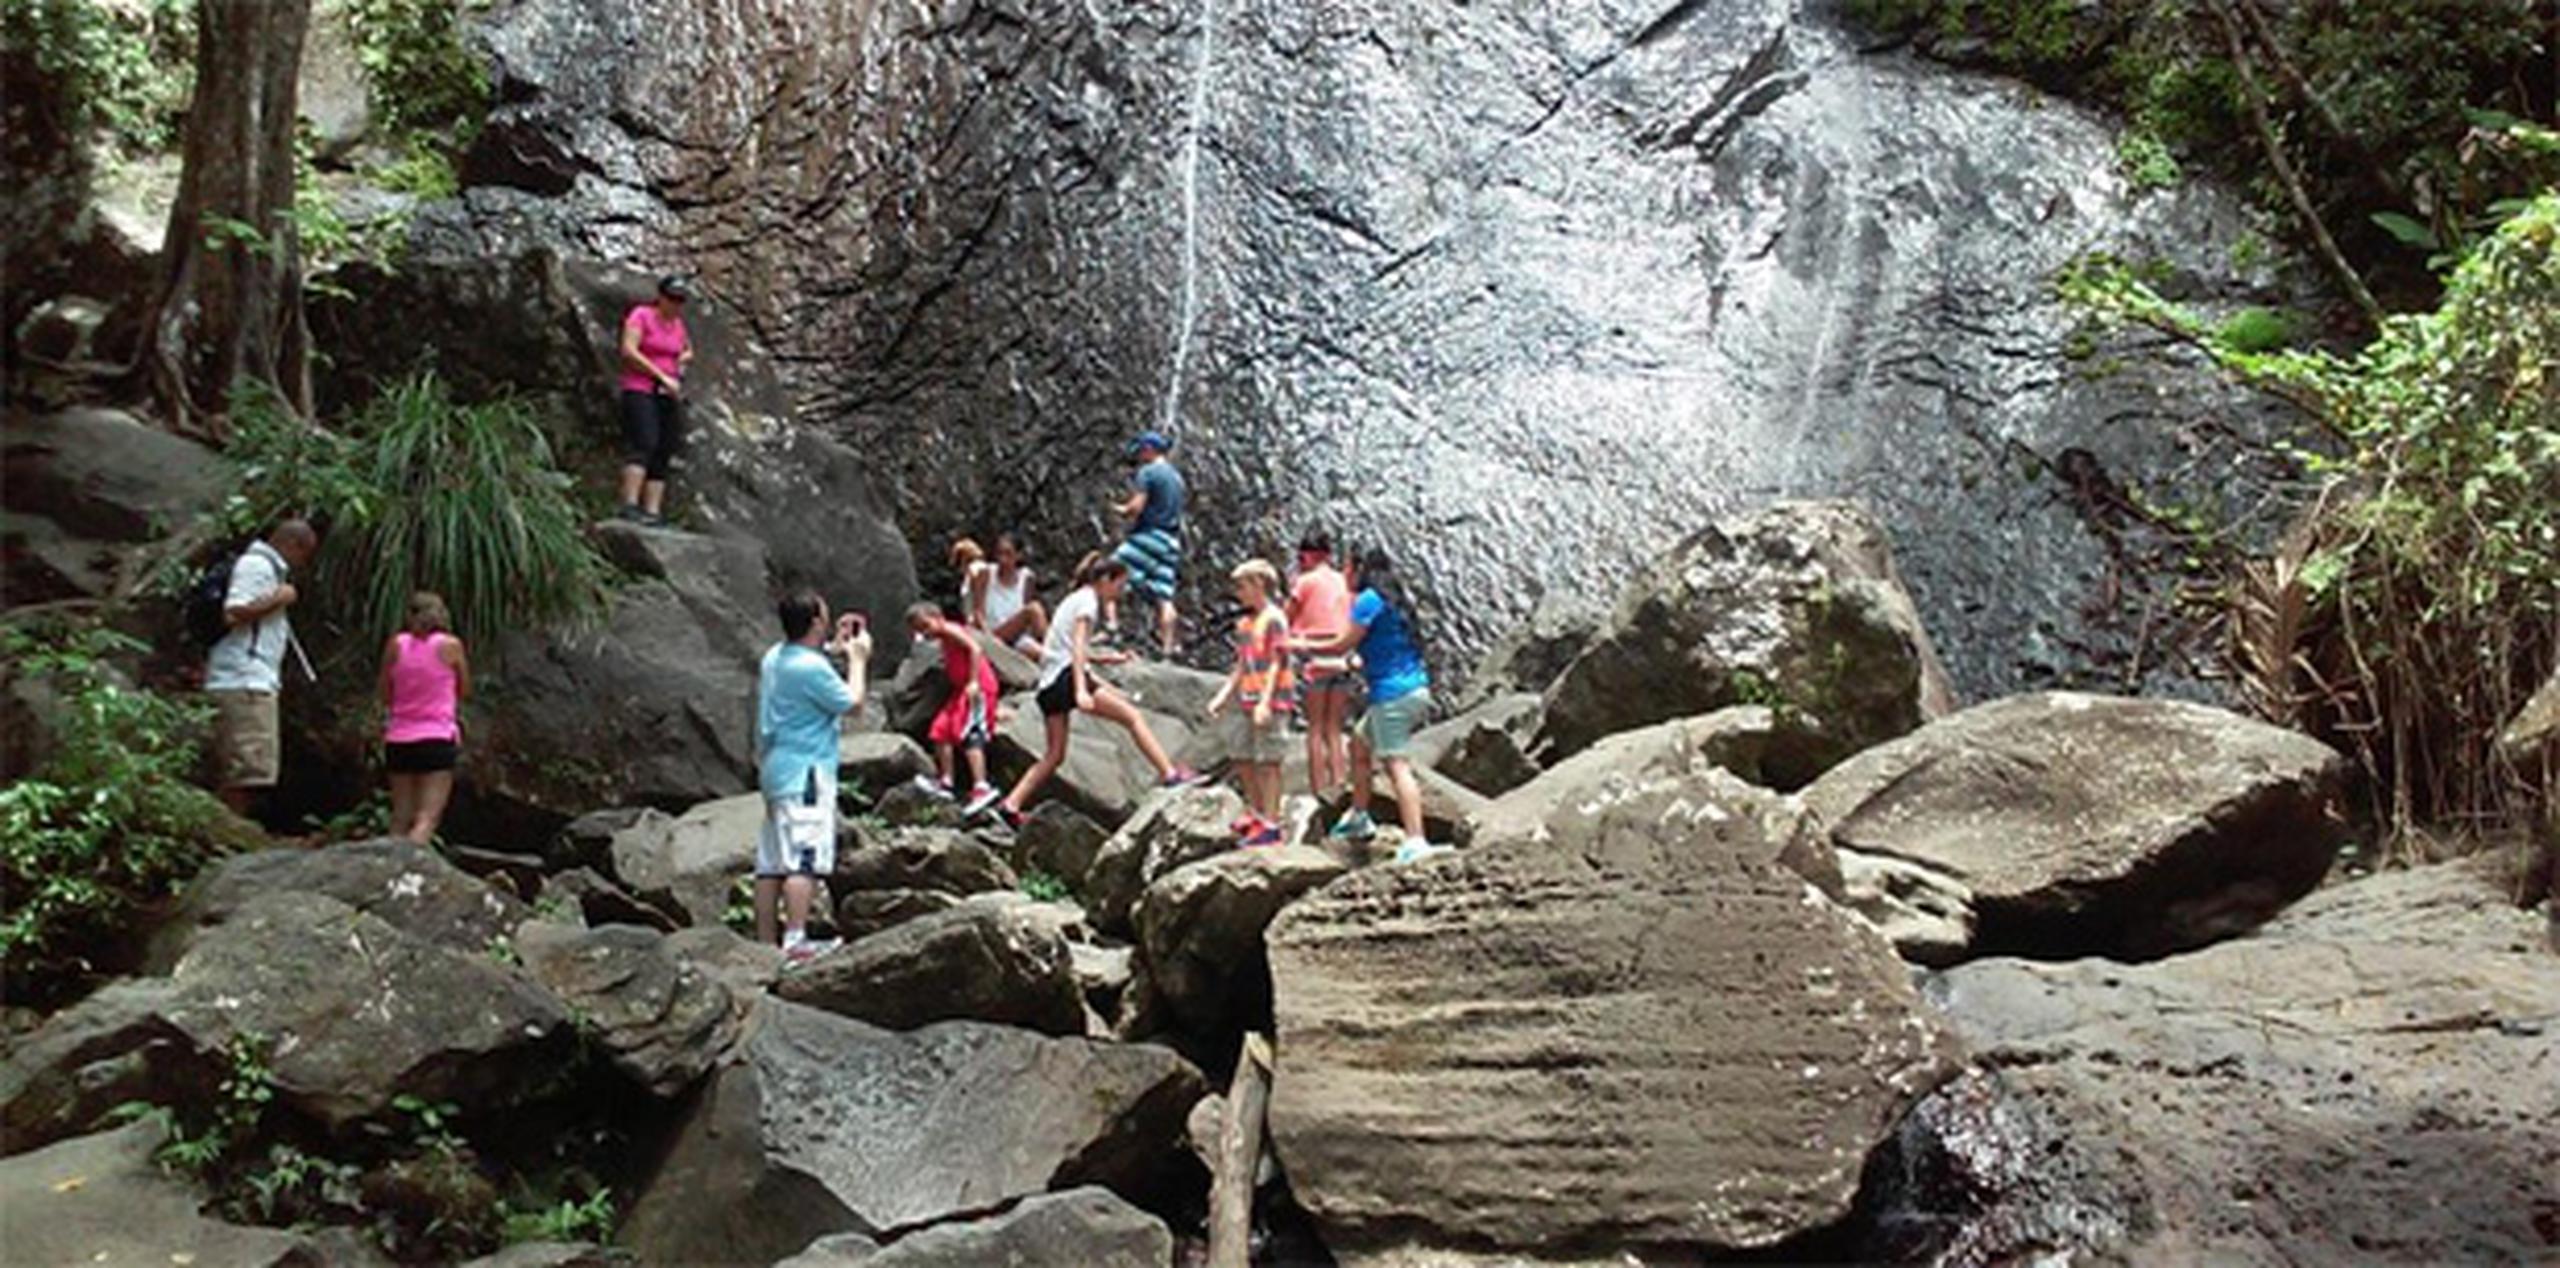 Turistas que acuden a la zona se dan cuenta que la famosa cascada de La Coca tiene menos agua. (Twitter/hperez1933)